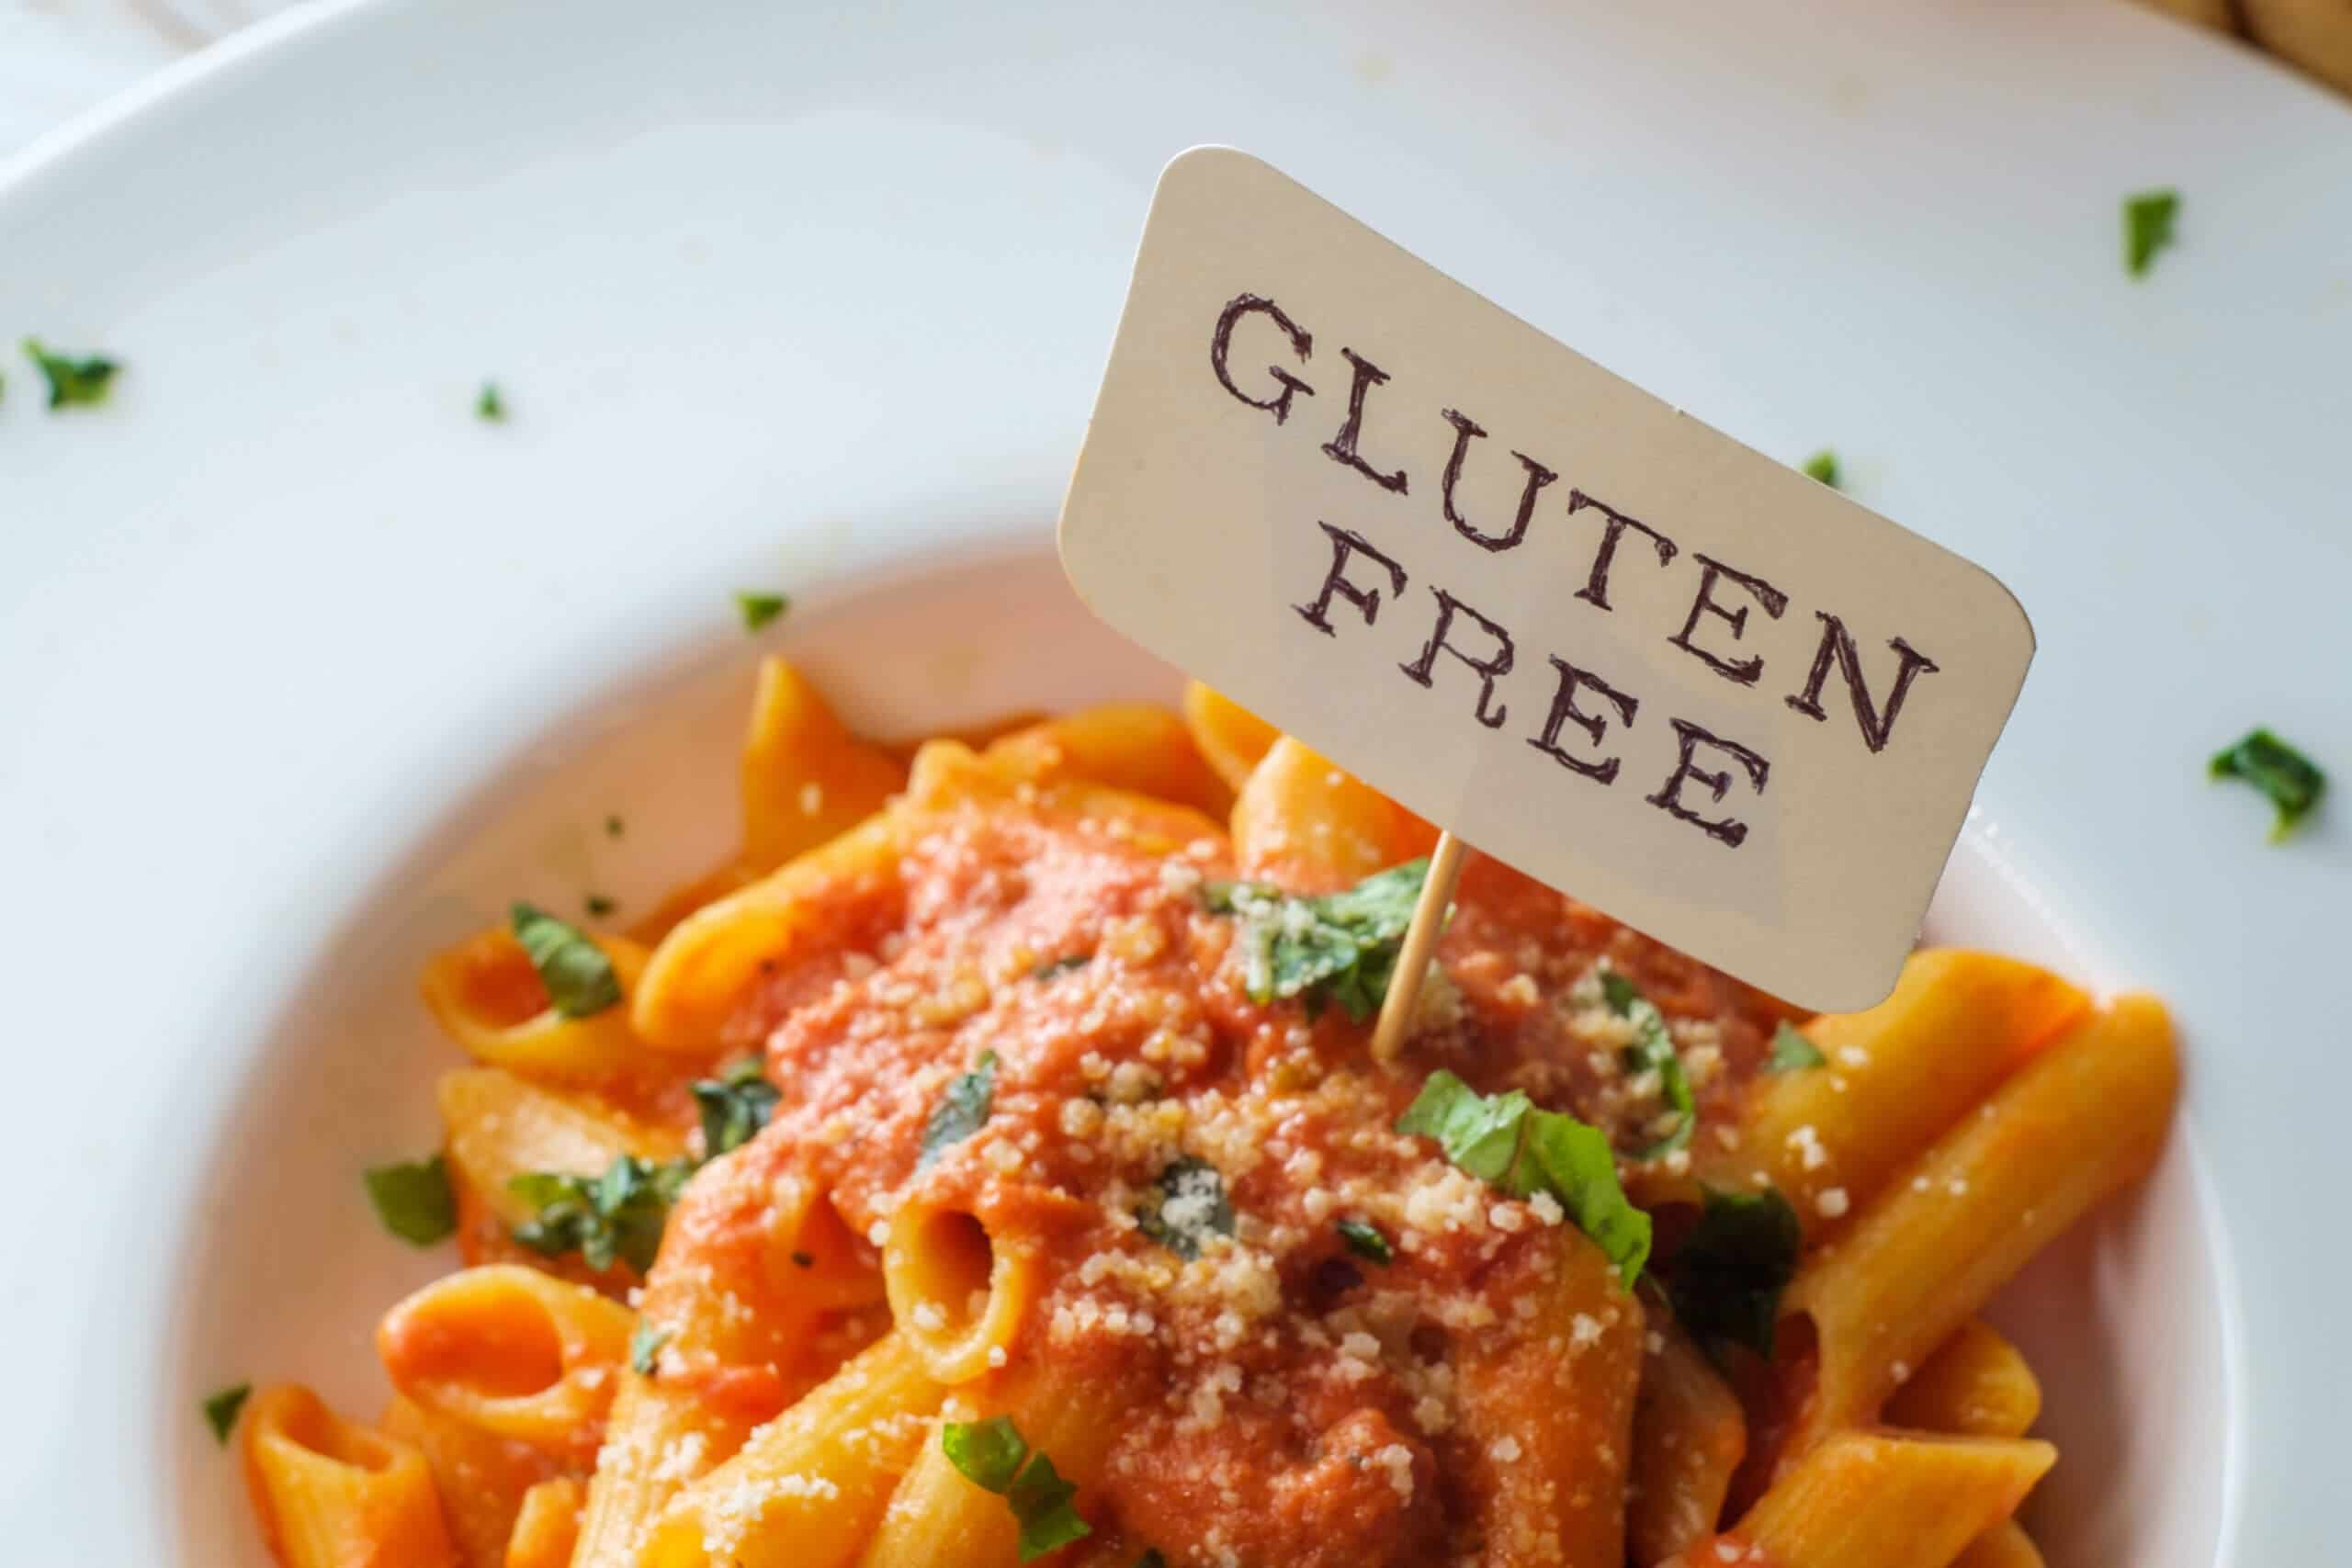 gluten-free diets